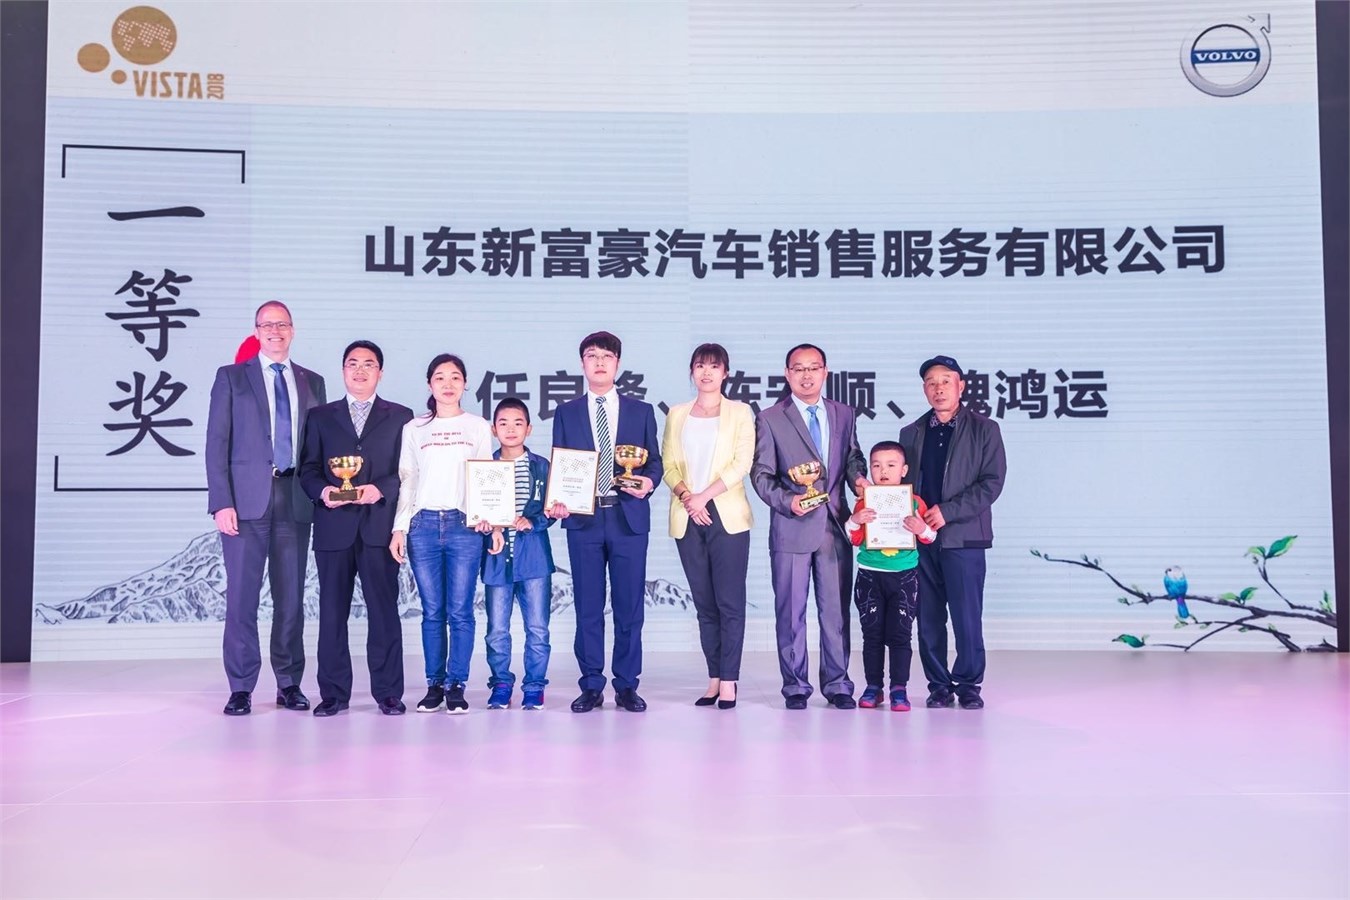 沃尔沃汽车集团全球客户服务副总裁Martin Persson为2018 VISTA中国区机电组冠军山东新富豪颁奖